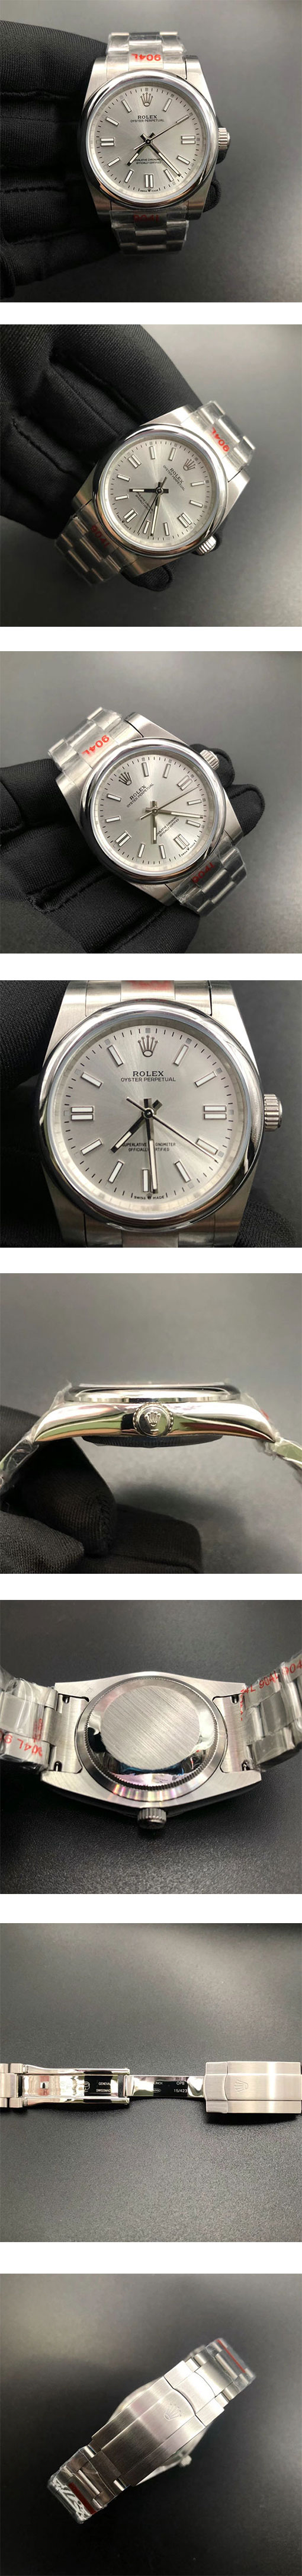 ブランドロレックス124300 オイスター パーペチュアル 41mm  スーパーコピー時計